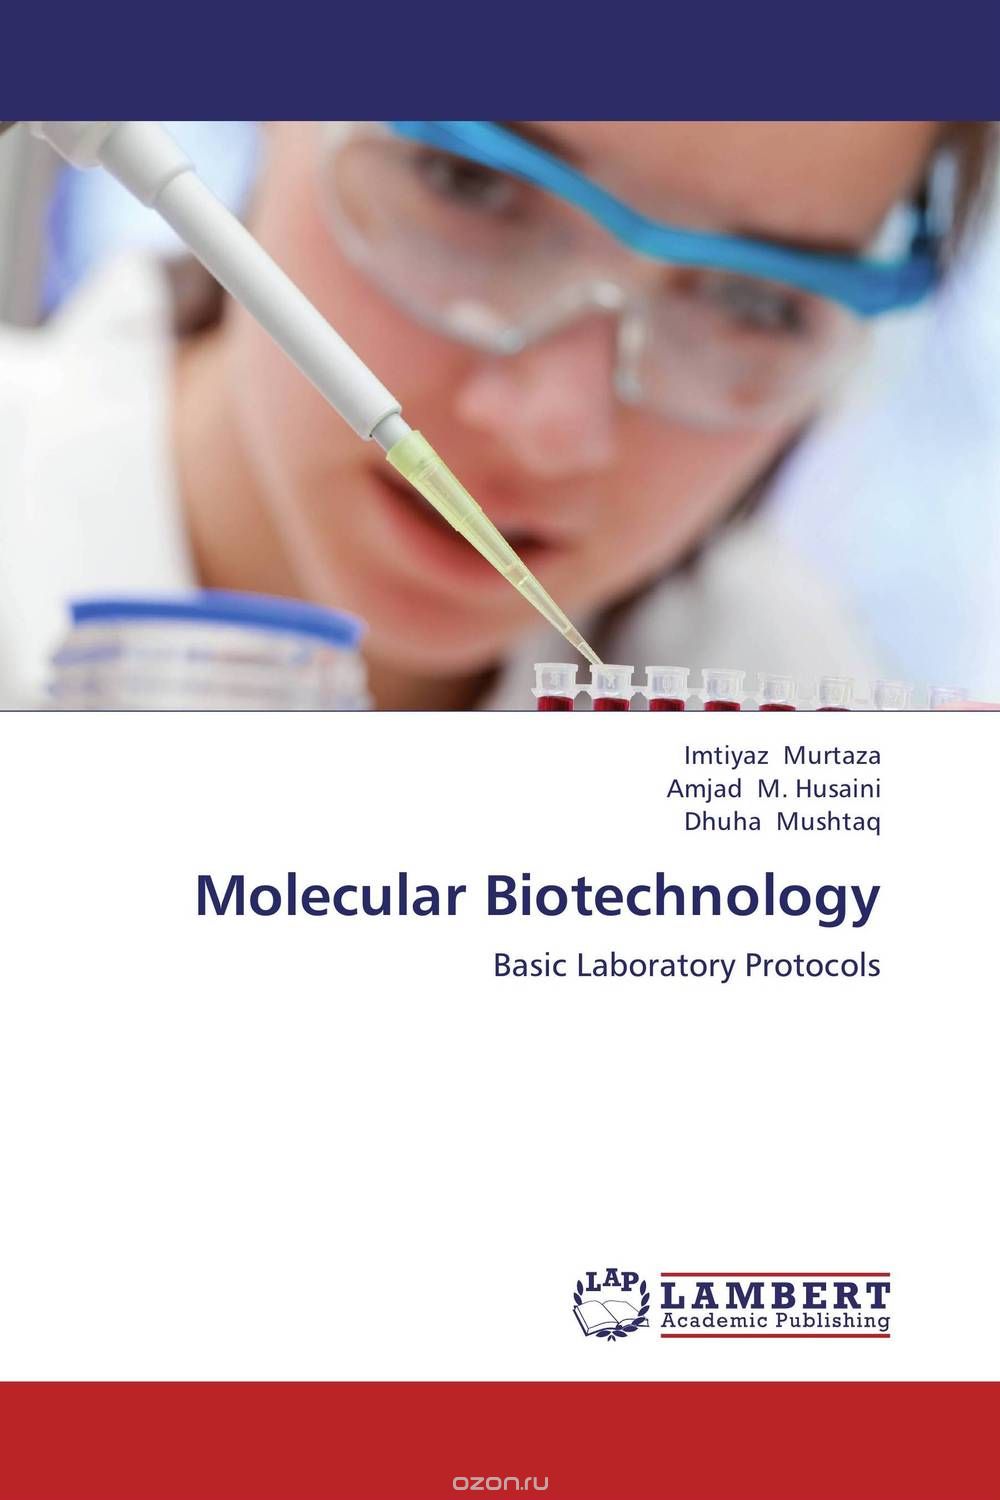 Скачать книгу "Molecular Biotechnology"